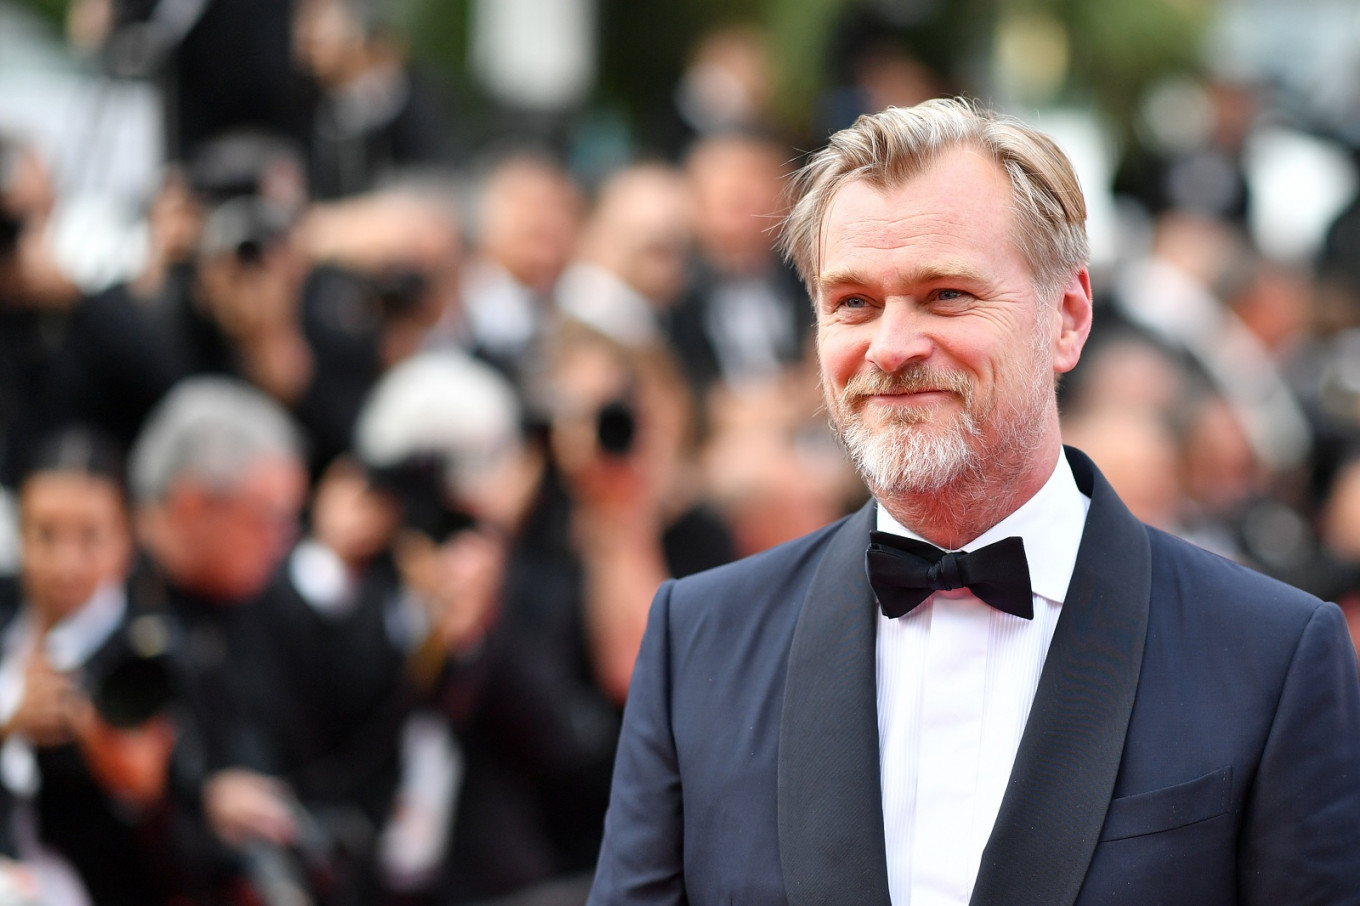 Estreia do filme "Tenet" de Christopher Nolan volta a ser adiada | CA Notícias | Canal Alternativo de Notícias